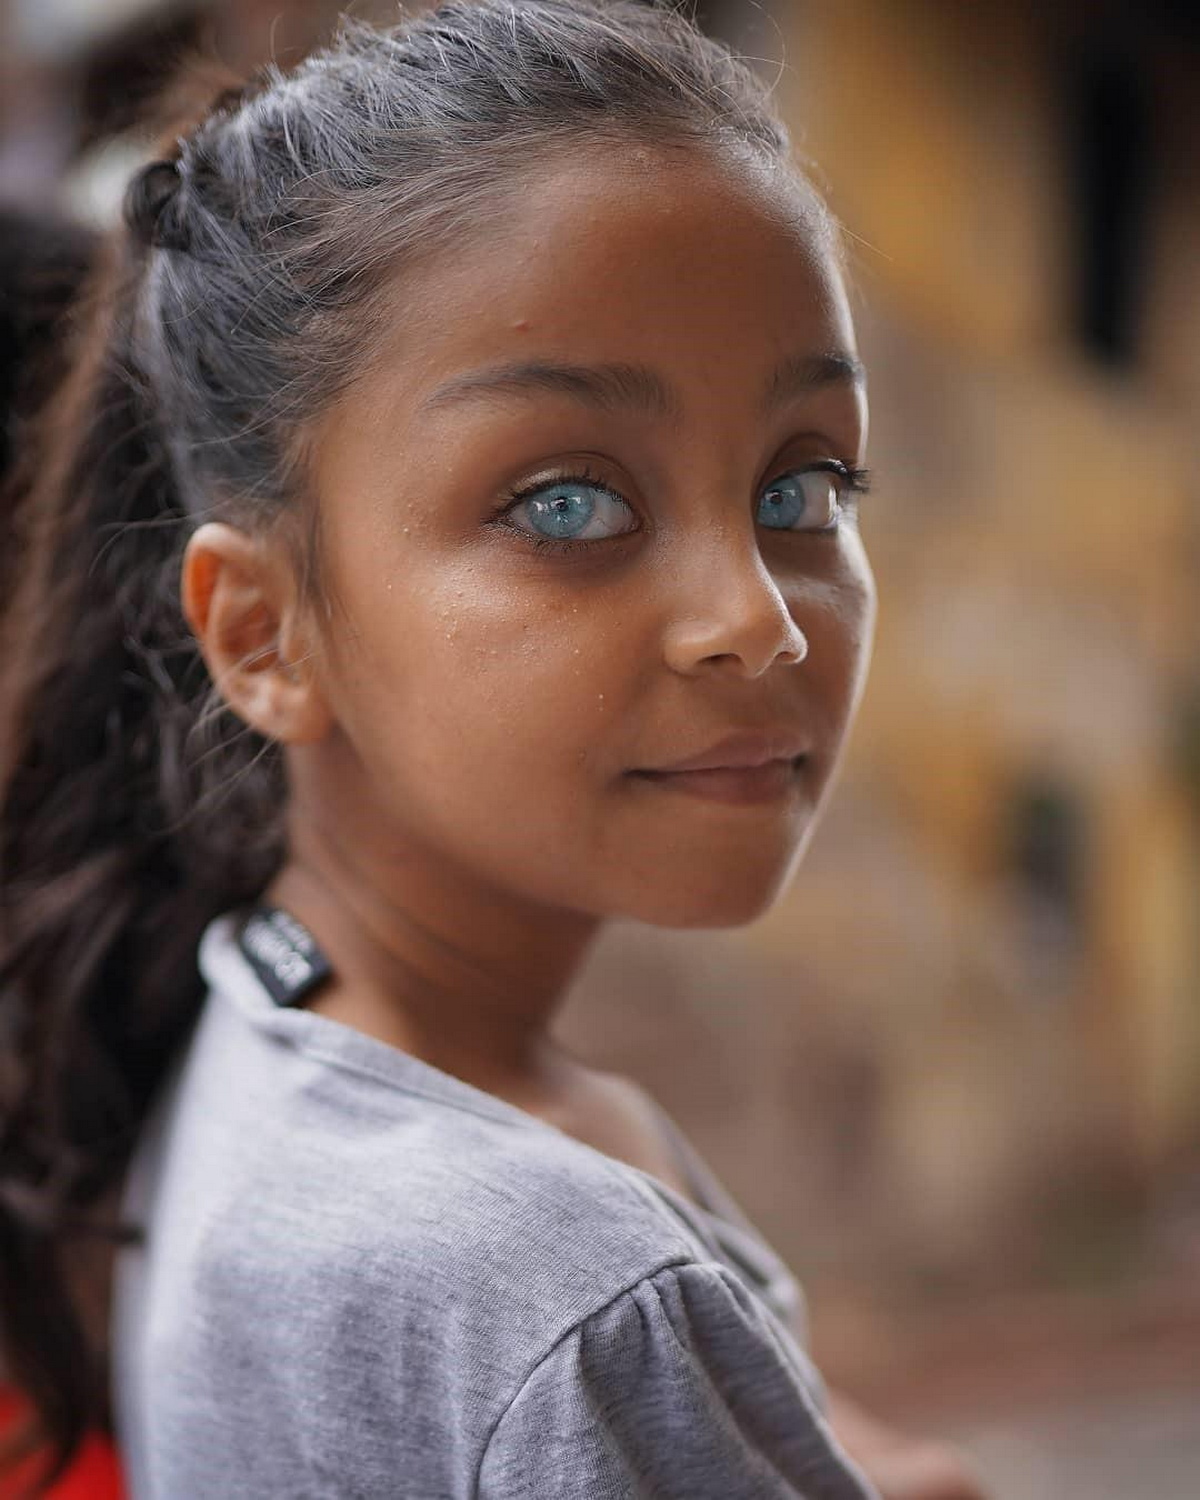 Турецкий фотограф Абдулла Айдемир запечатлел потрясающую красоту детских глаз